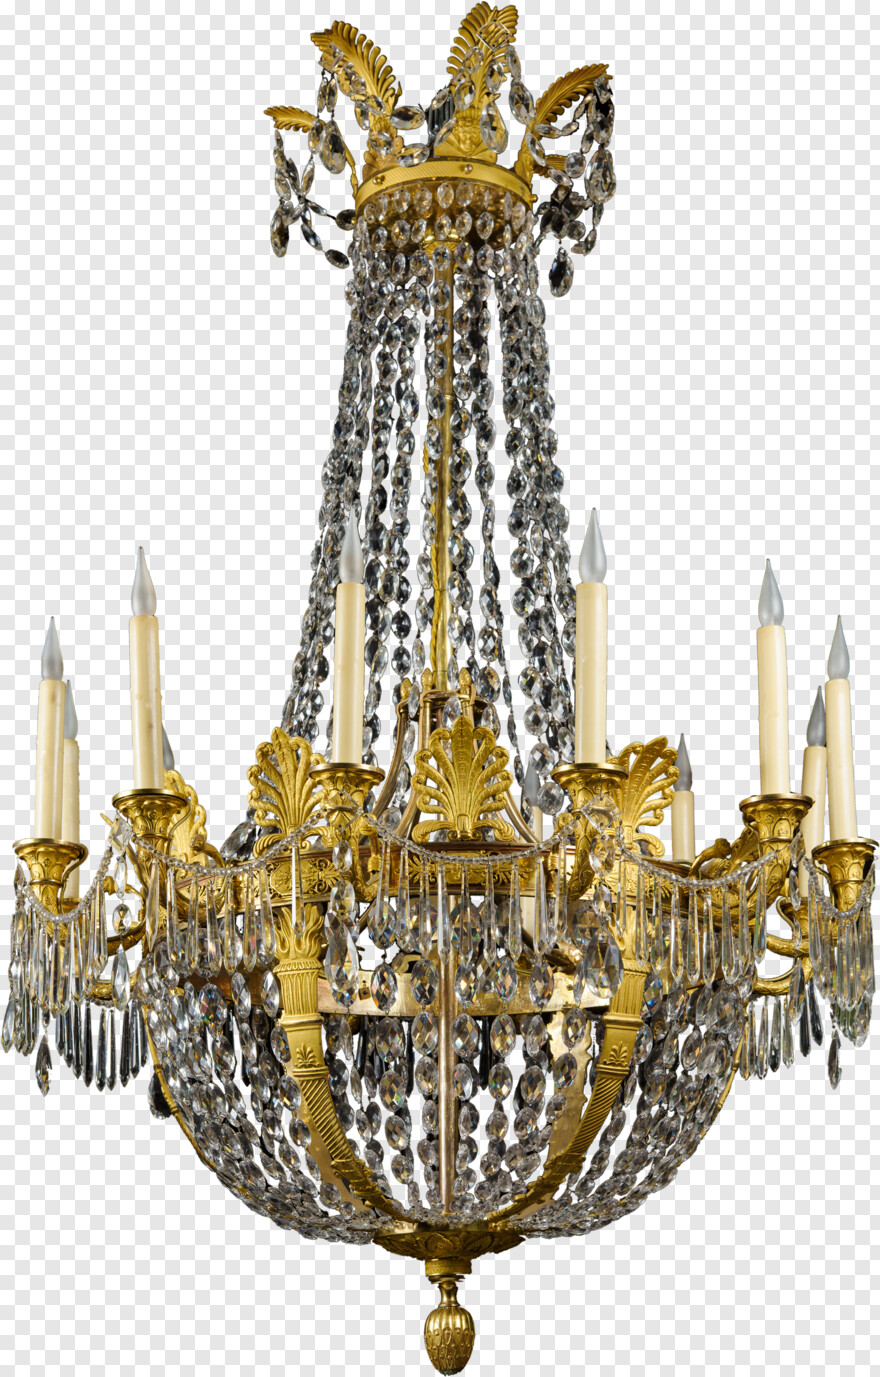 chandelier # 506027